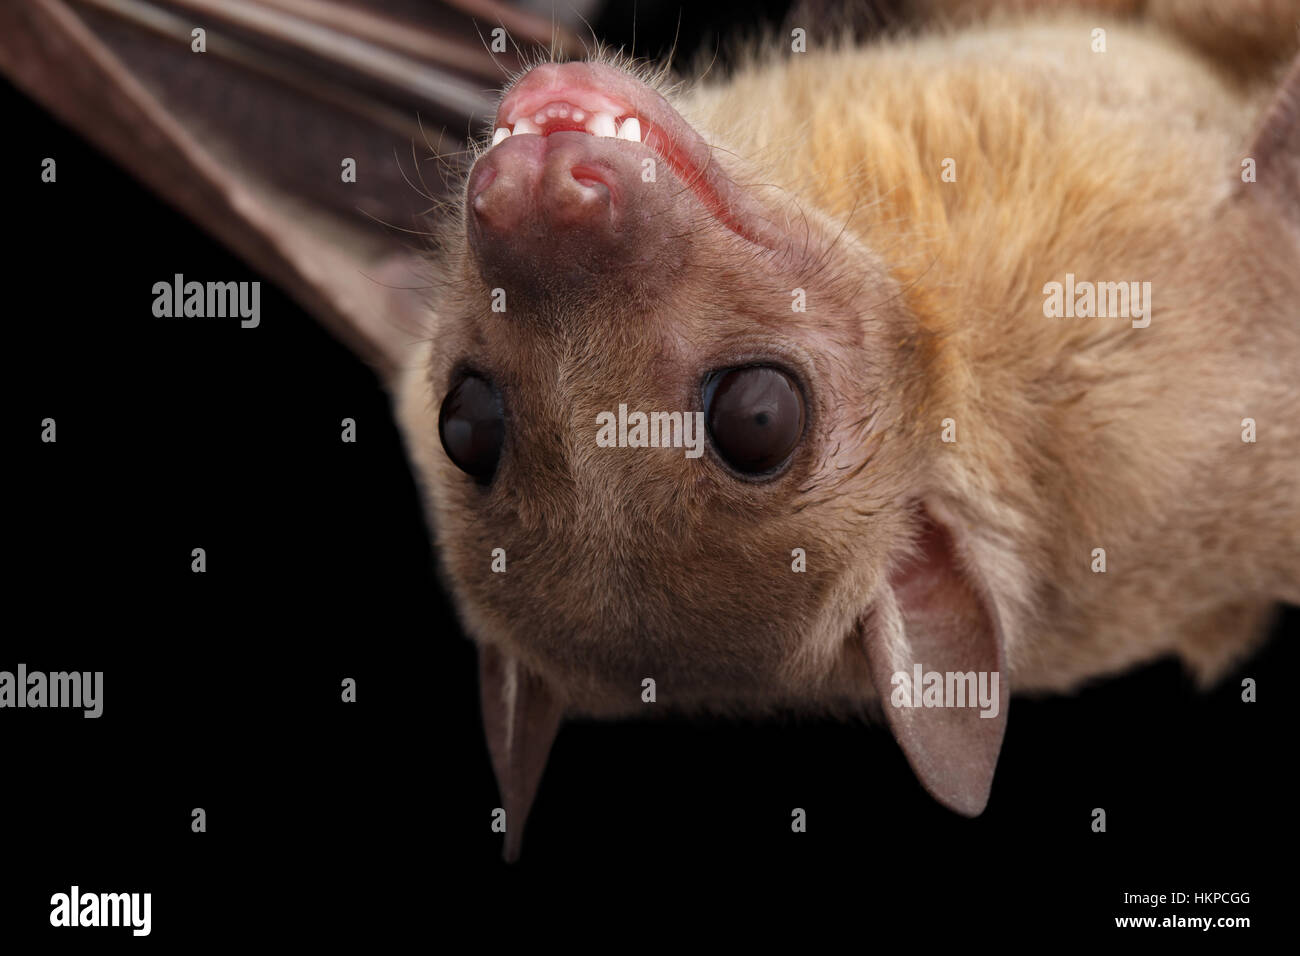 Egyptian fruit bat or rousette, black background Stock Photo